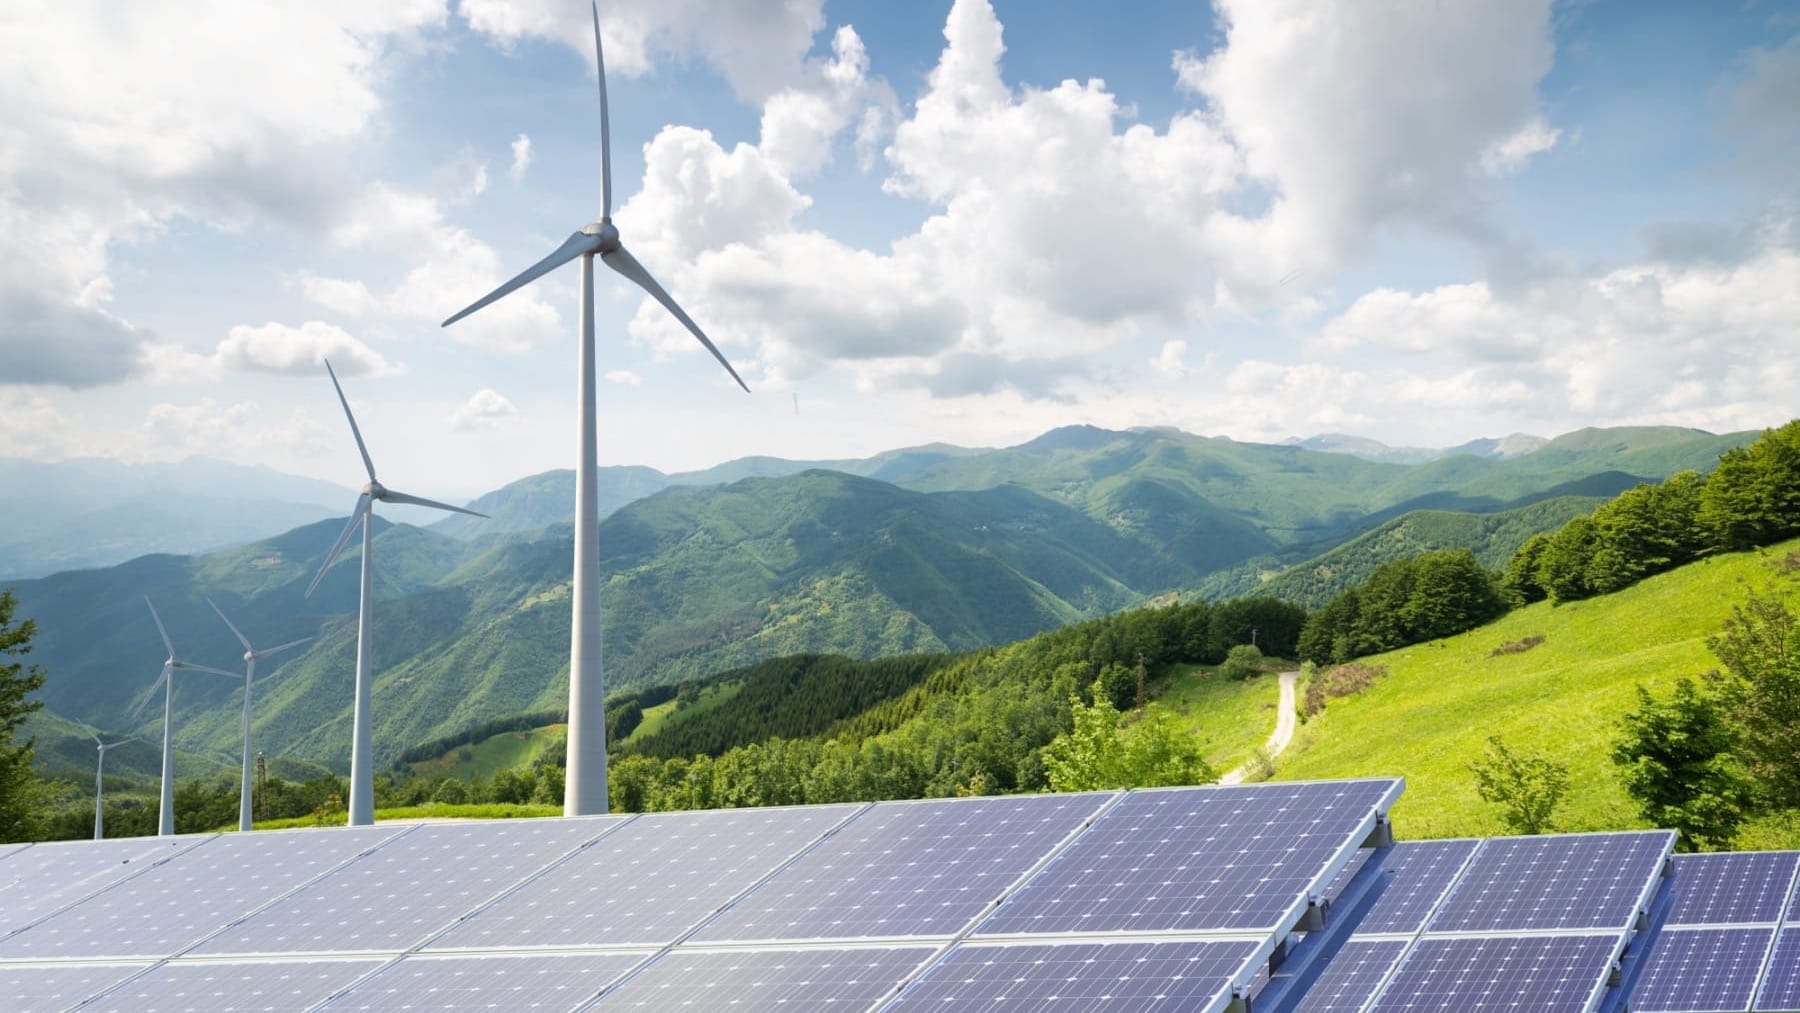 ЕБРР выдал $85 млн кредитов на финансирование зеленой энергетики в КР